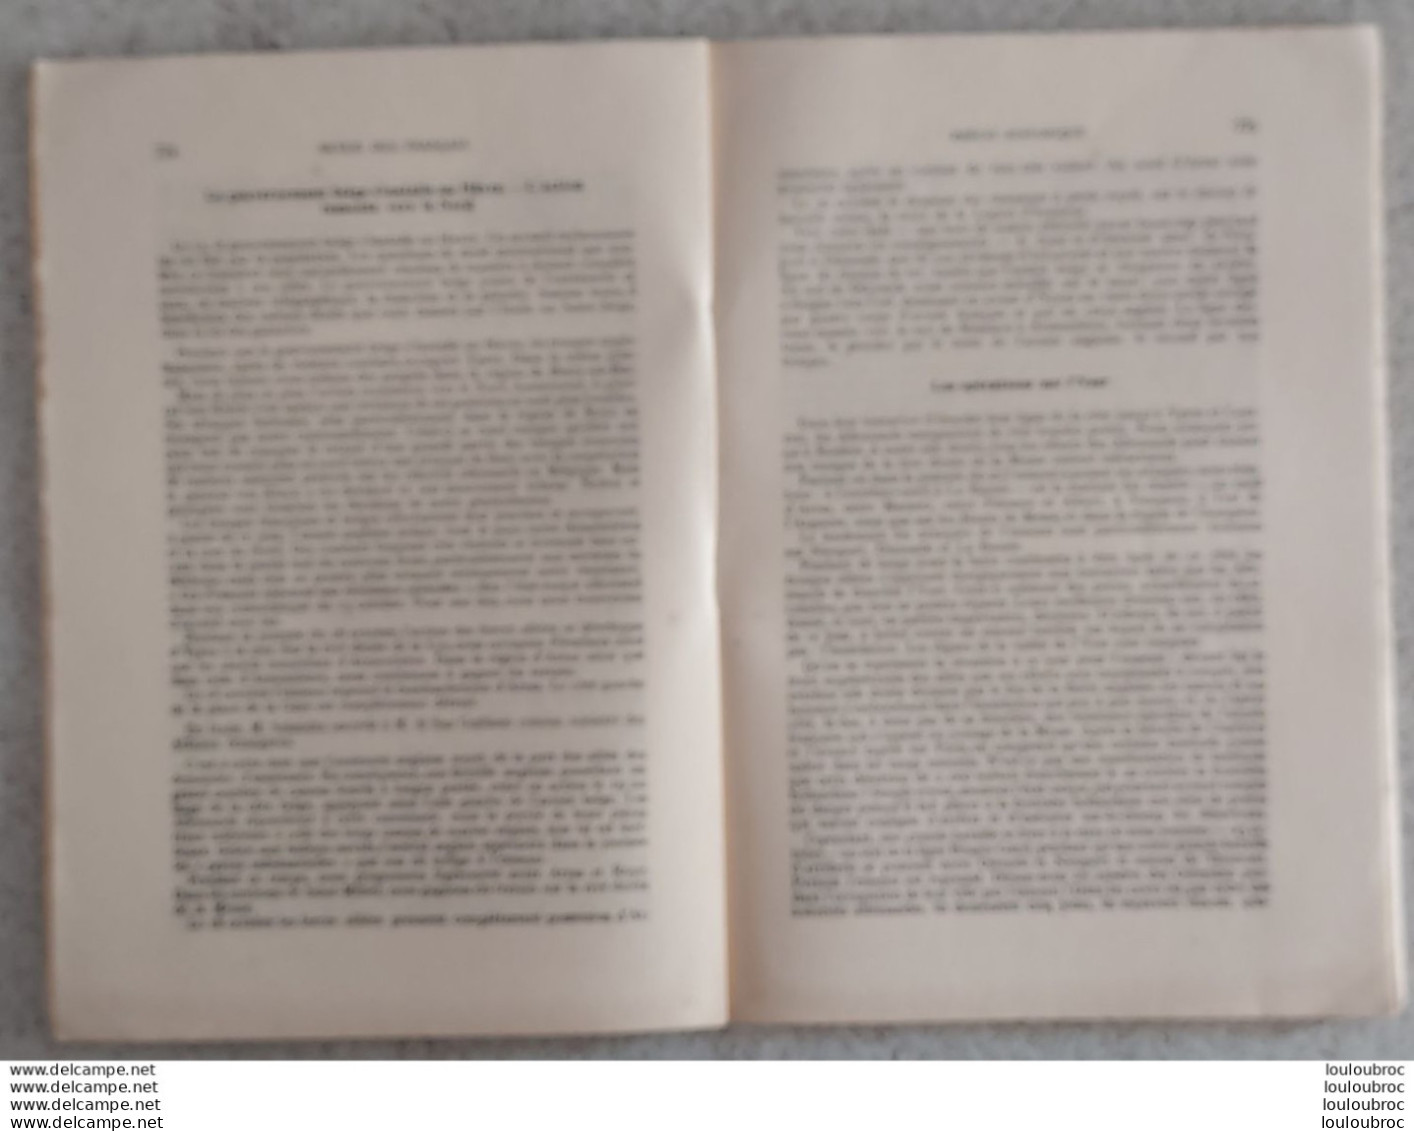 REVUE DES FRANCAIS 11/1914 LIVRET DE 48 PAGES - Historical Documents